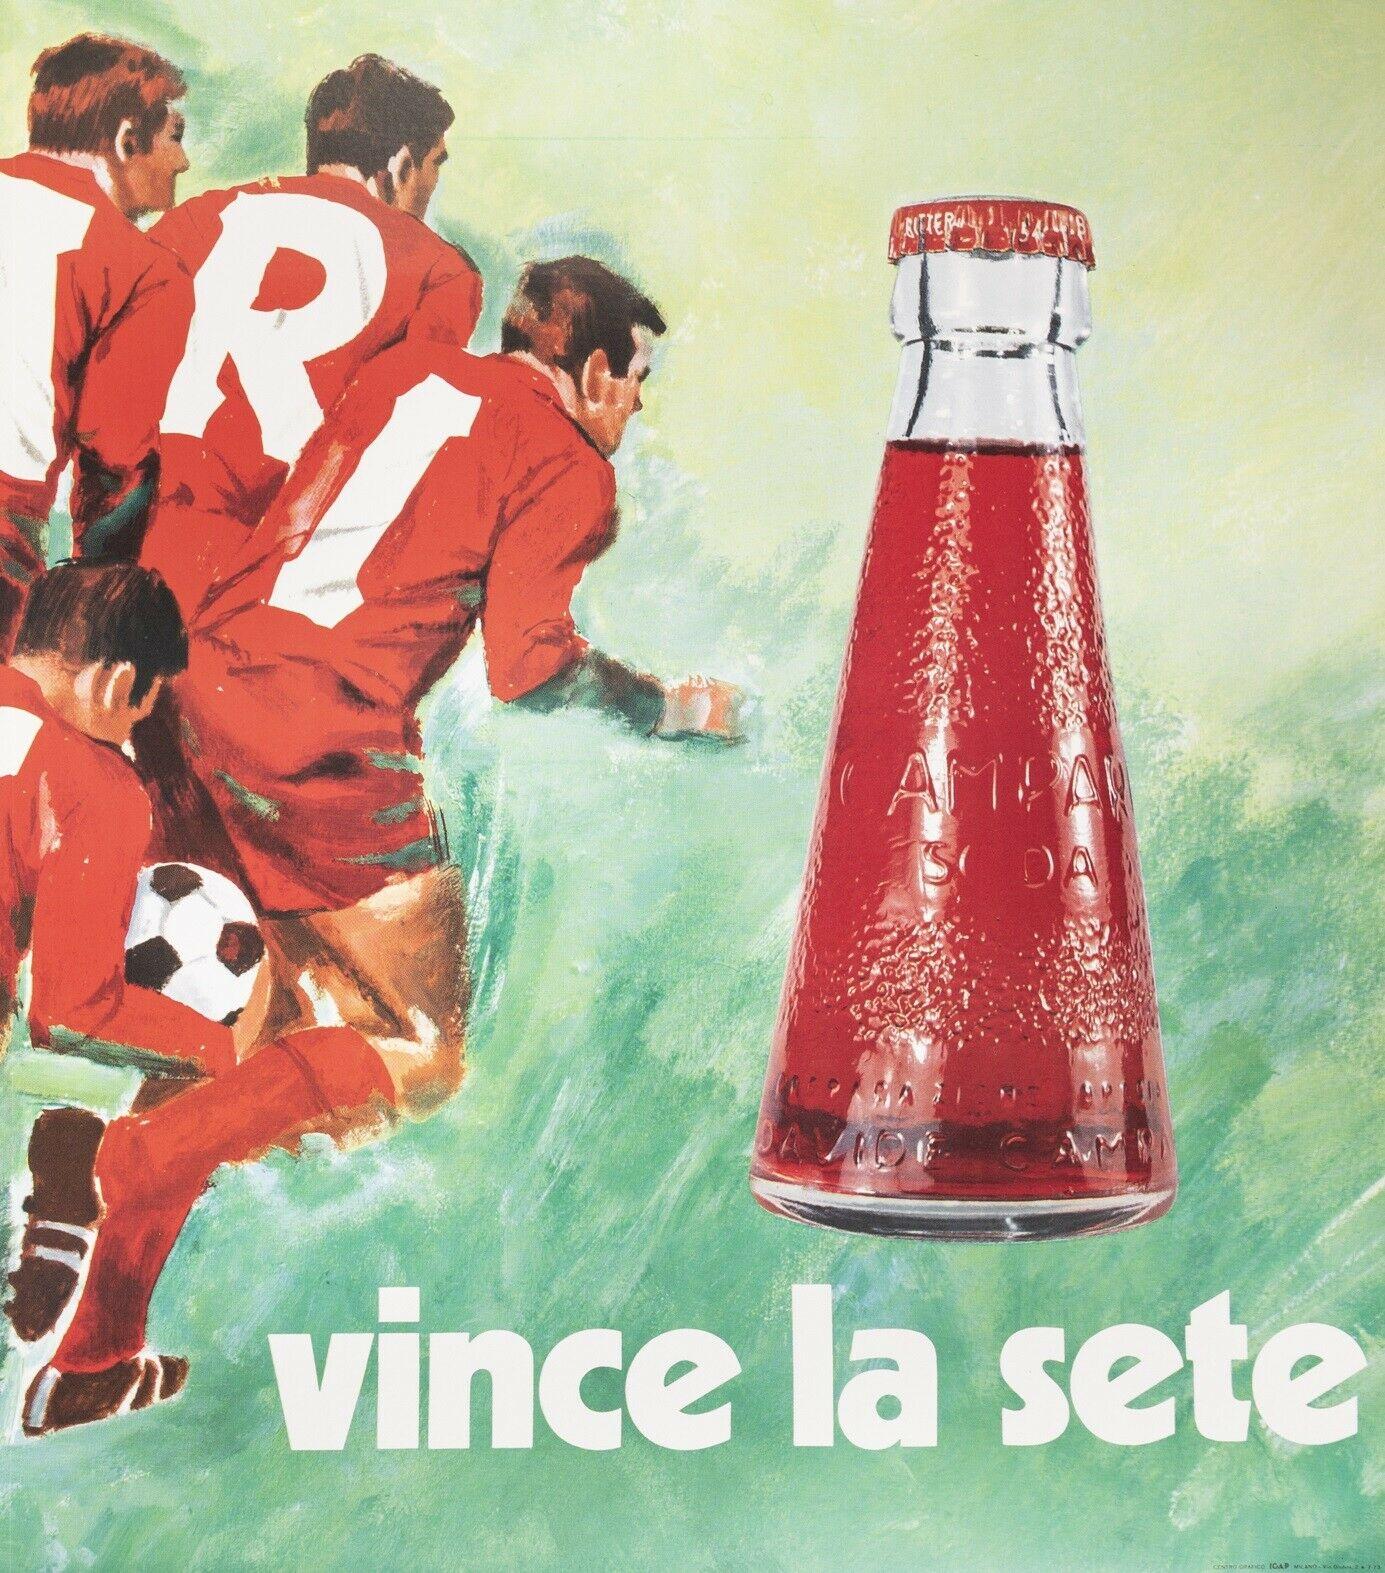 Affiche vintage d'origine-Pijoan-Campari Soda-Soccer-Liqueur, c.1970
Affiches publicitaires pour Campari Soda. Une équipe de football avec des maillots rouges fait la promotion de la marque.

Détails supplémentaires :
Matériaux et techniques :